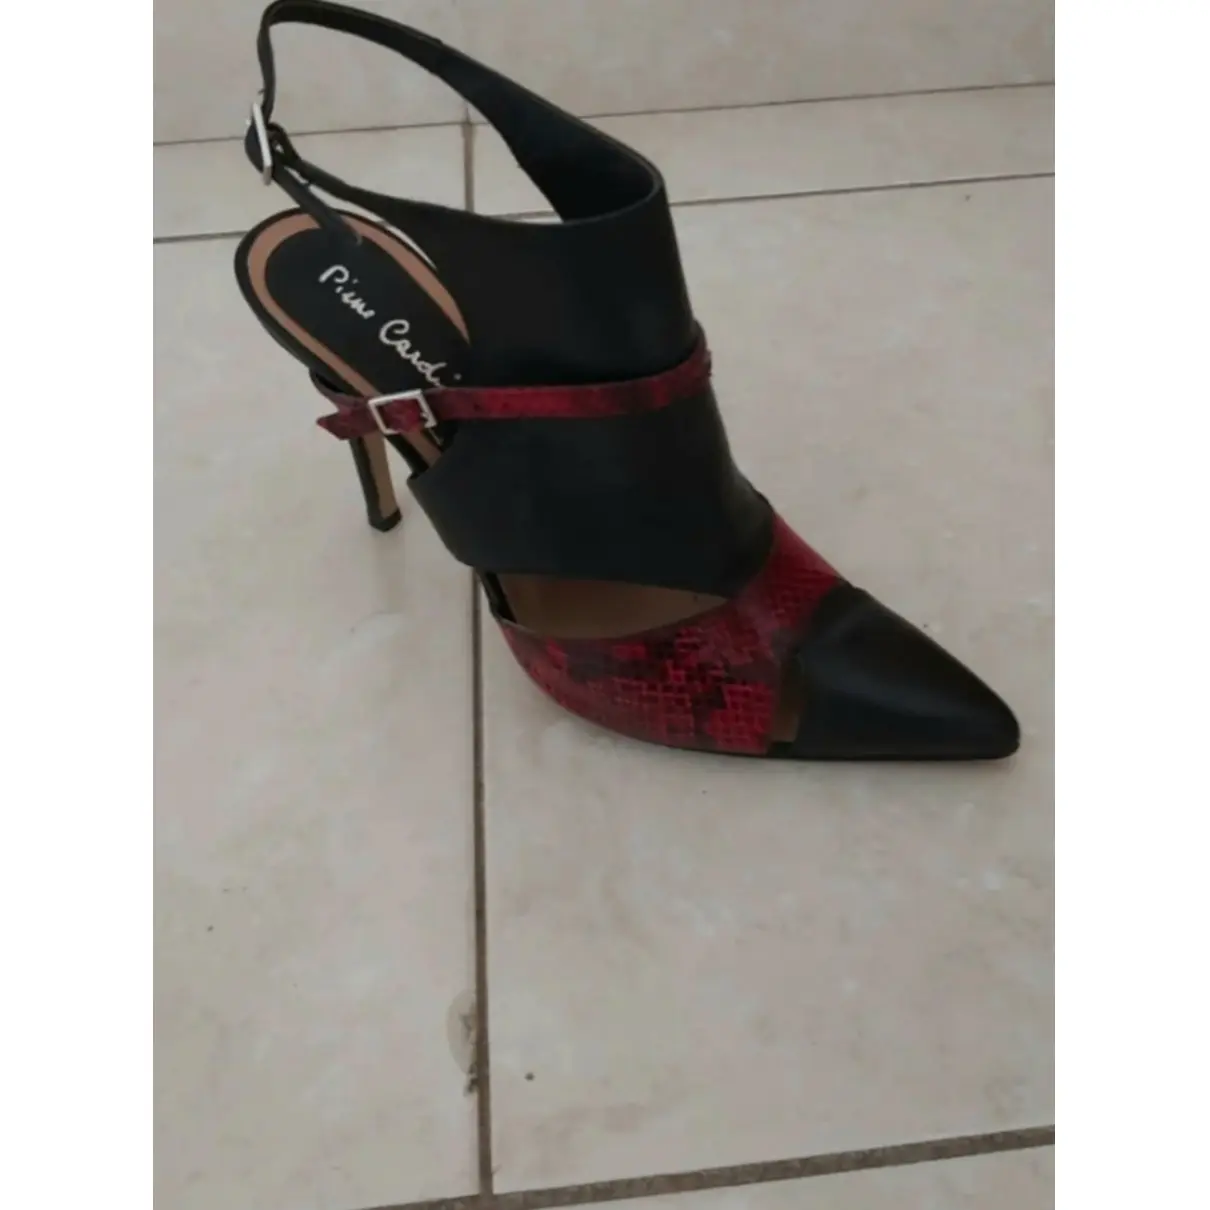 Buy Pierre Cardin Leather heels online